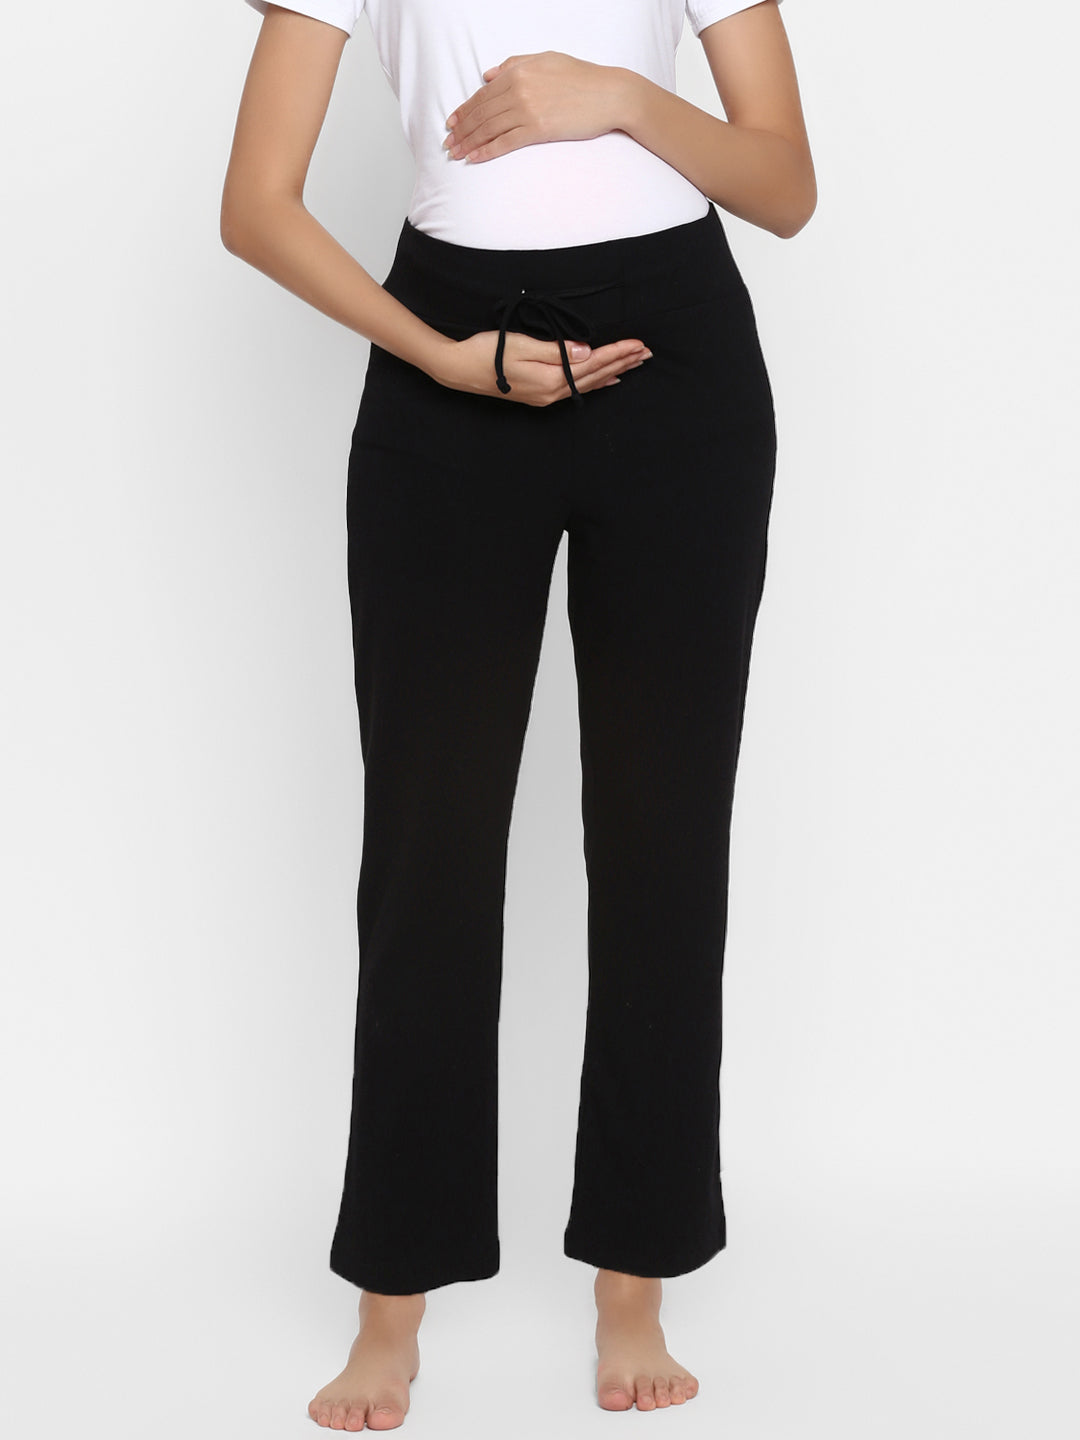 Low Waist Cotton Maternity Pants - Black